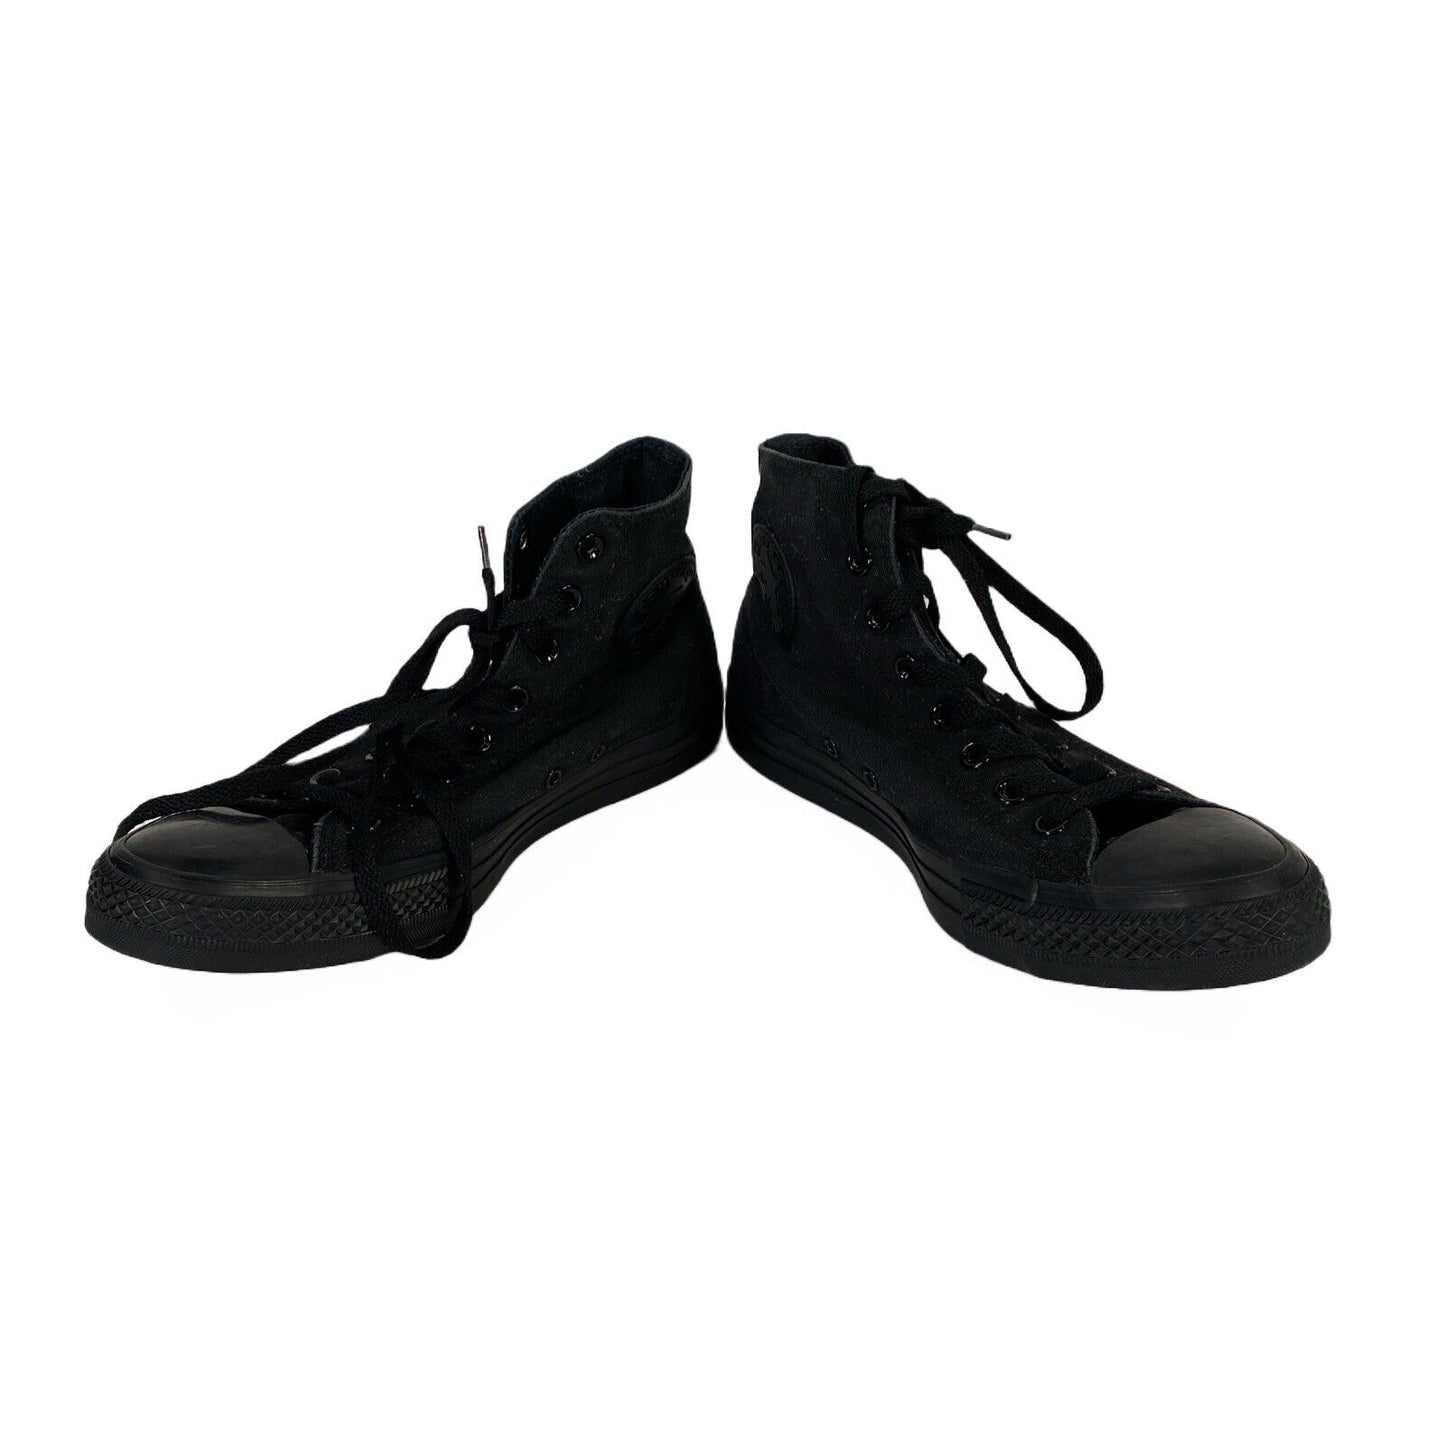 Converse Zapatillas altas unisex de lona negra con cordones - Hombre 9